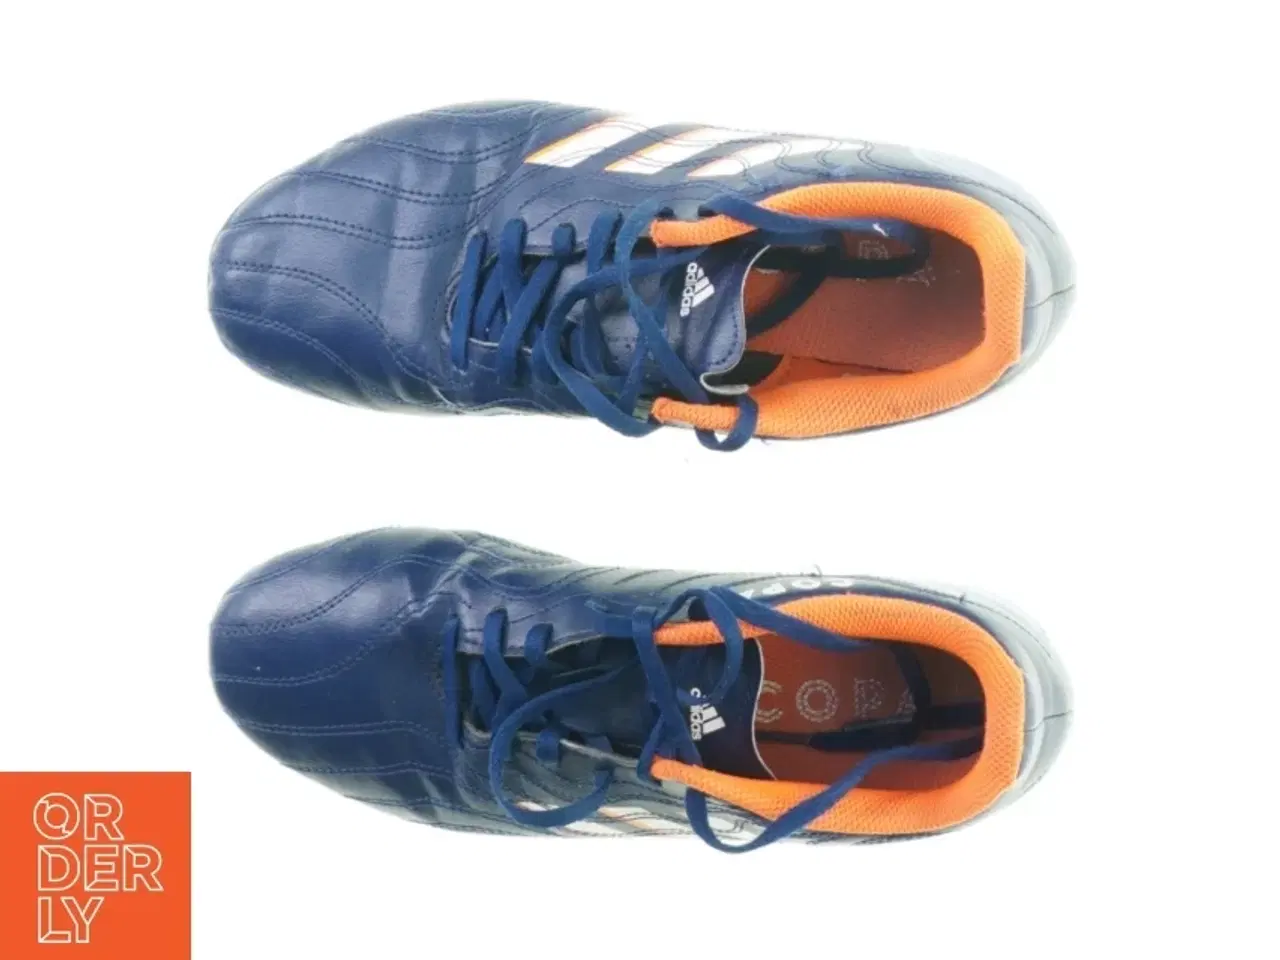 Billede 2 - Fodboldstøvler fra Adidas (str. 25 cm)